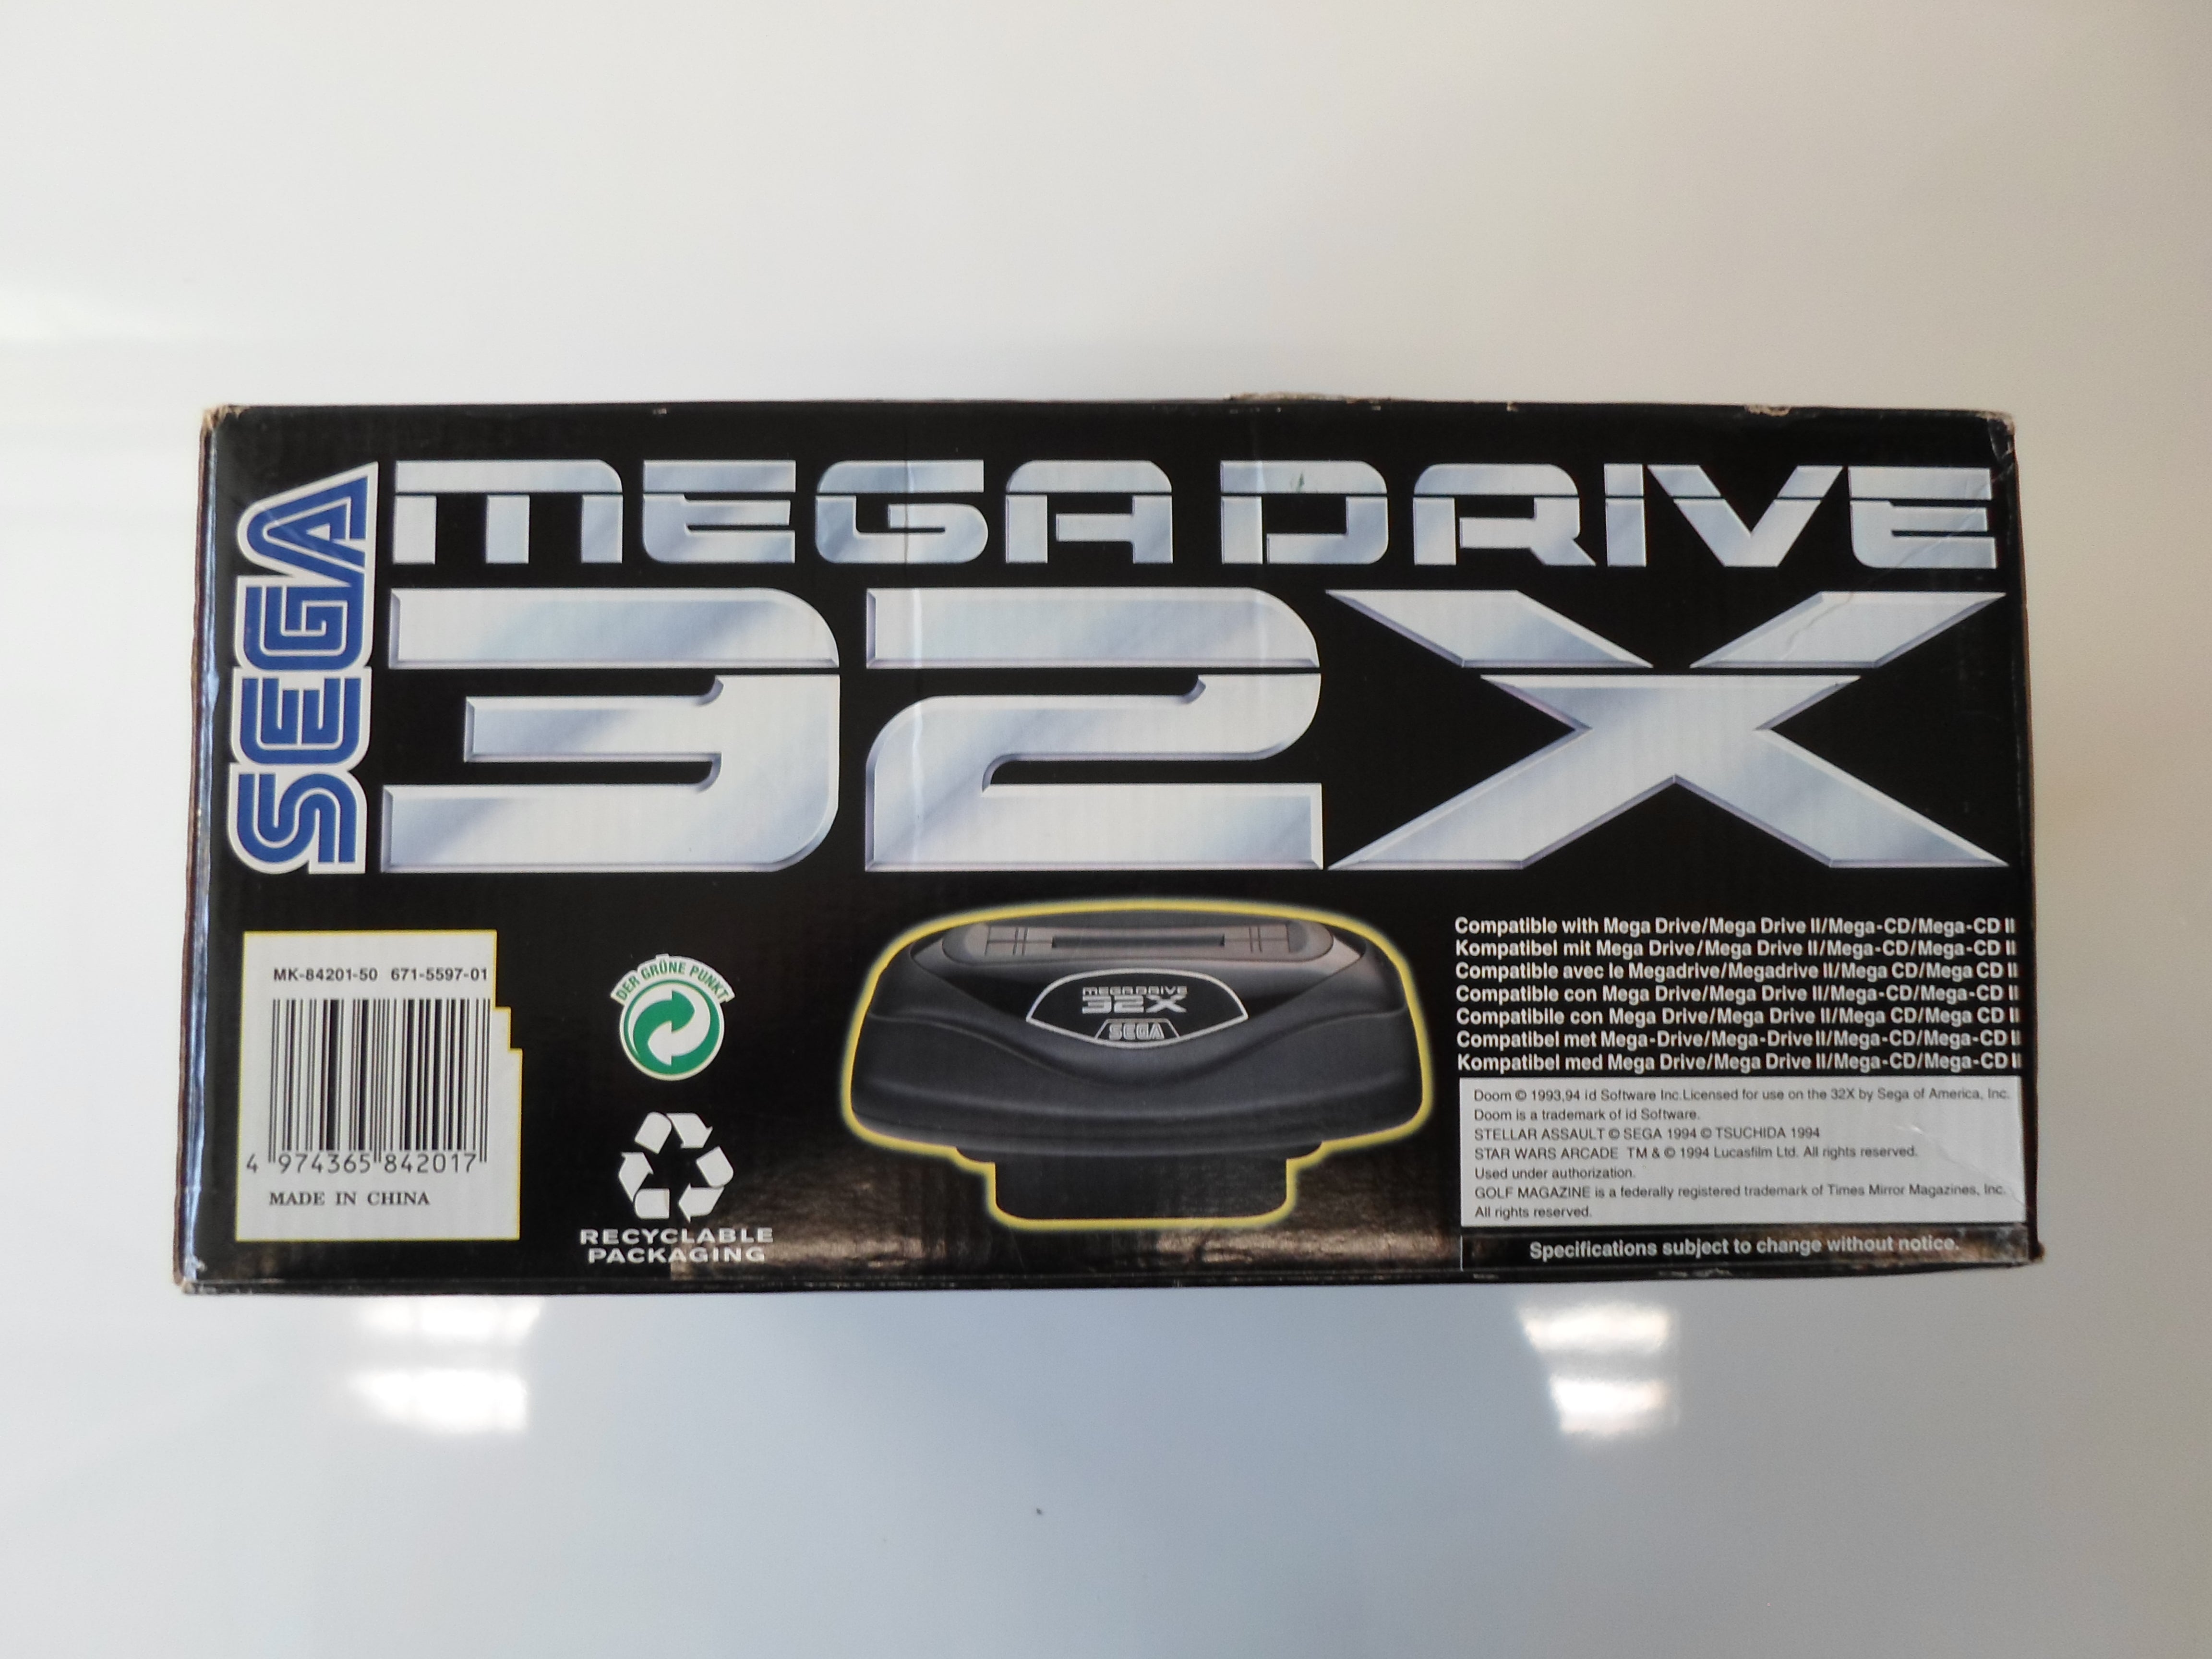 Sega 32X - Pre-owned [Boxed] | Yard's Games Ltd